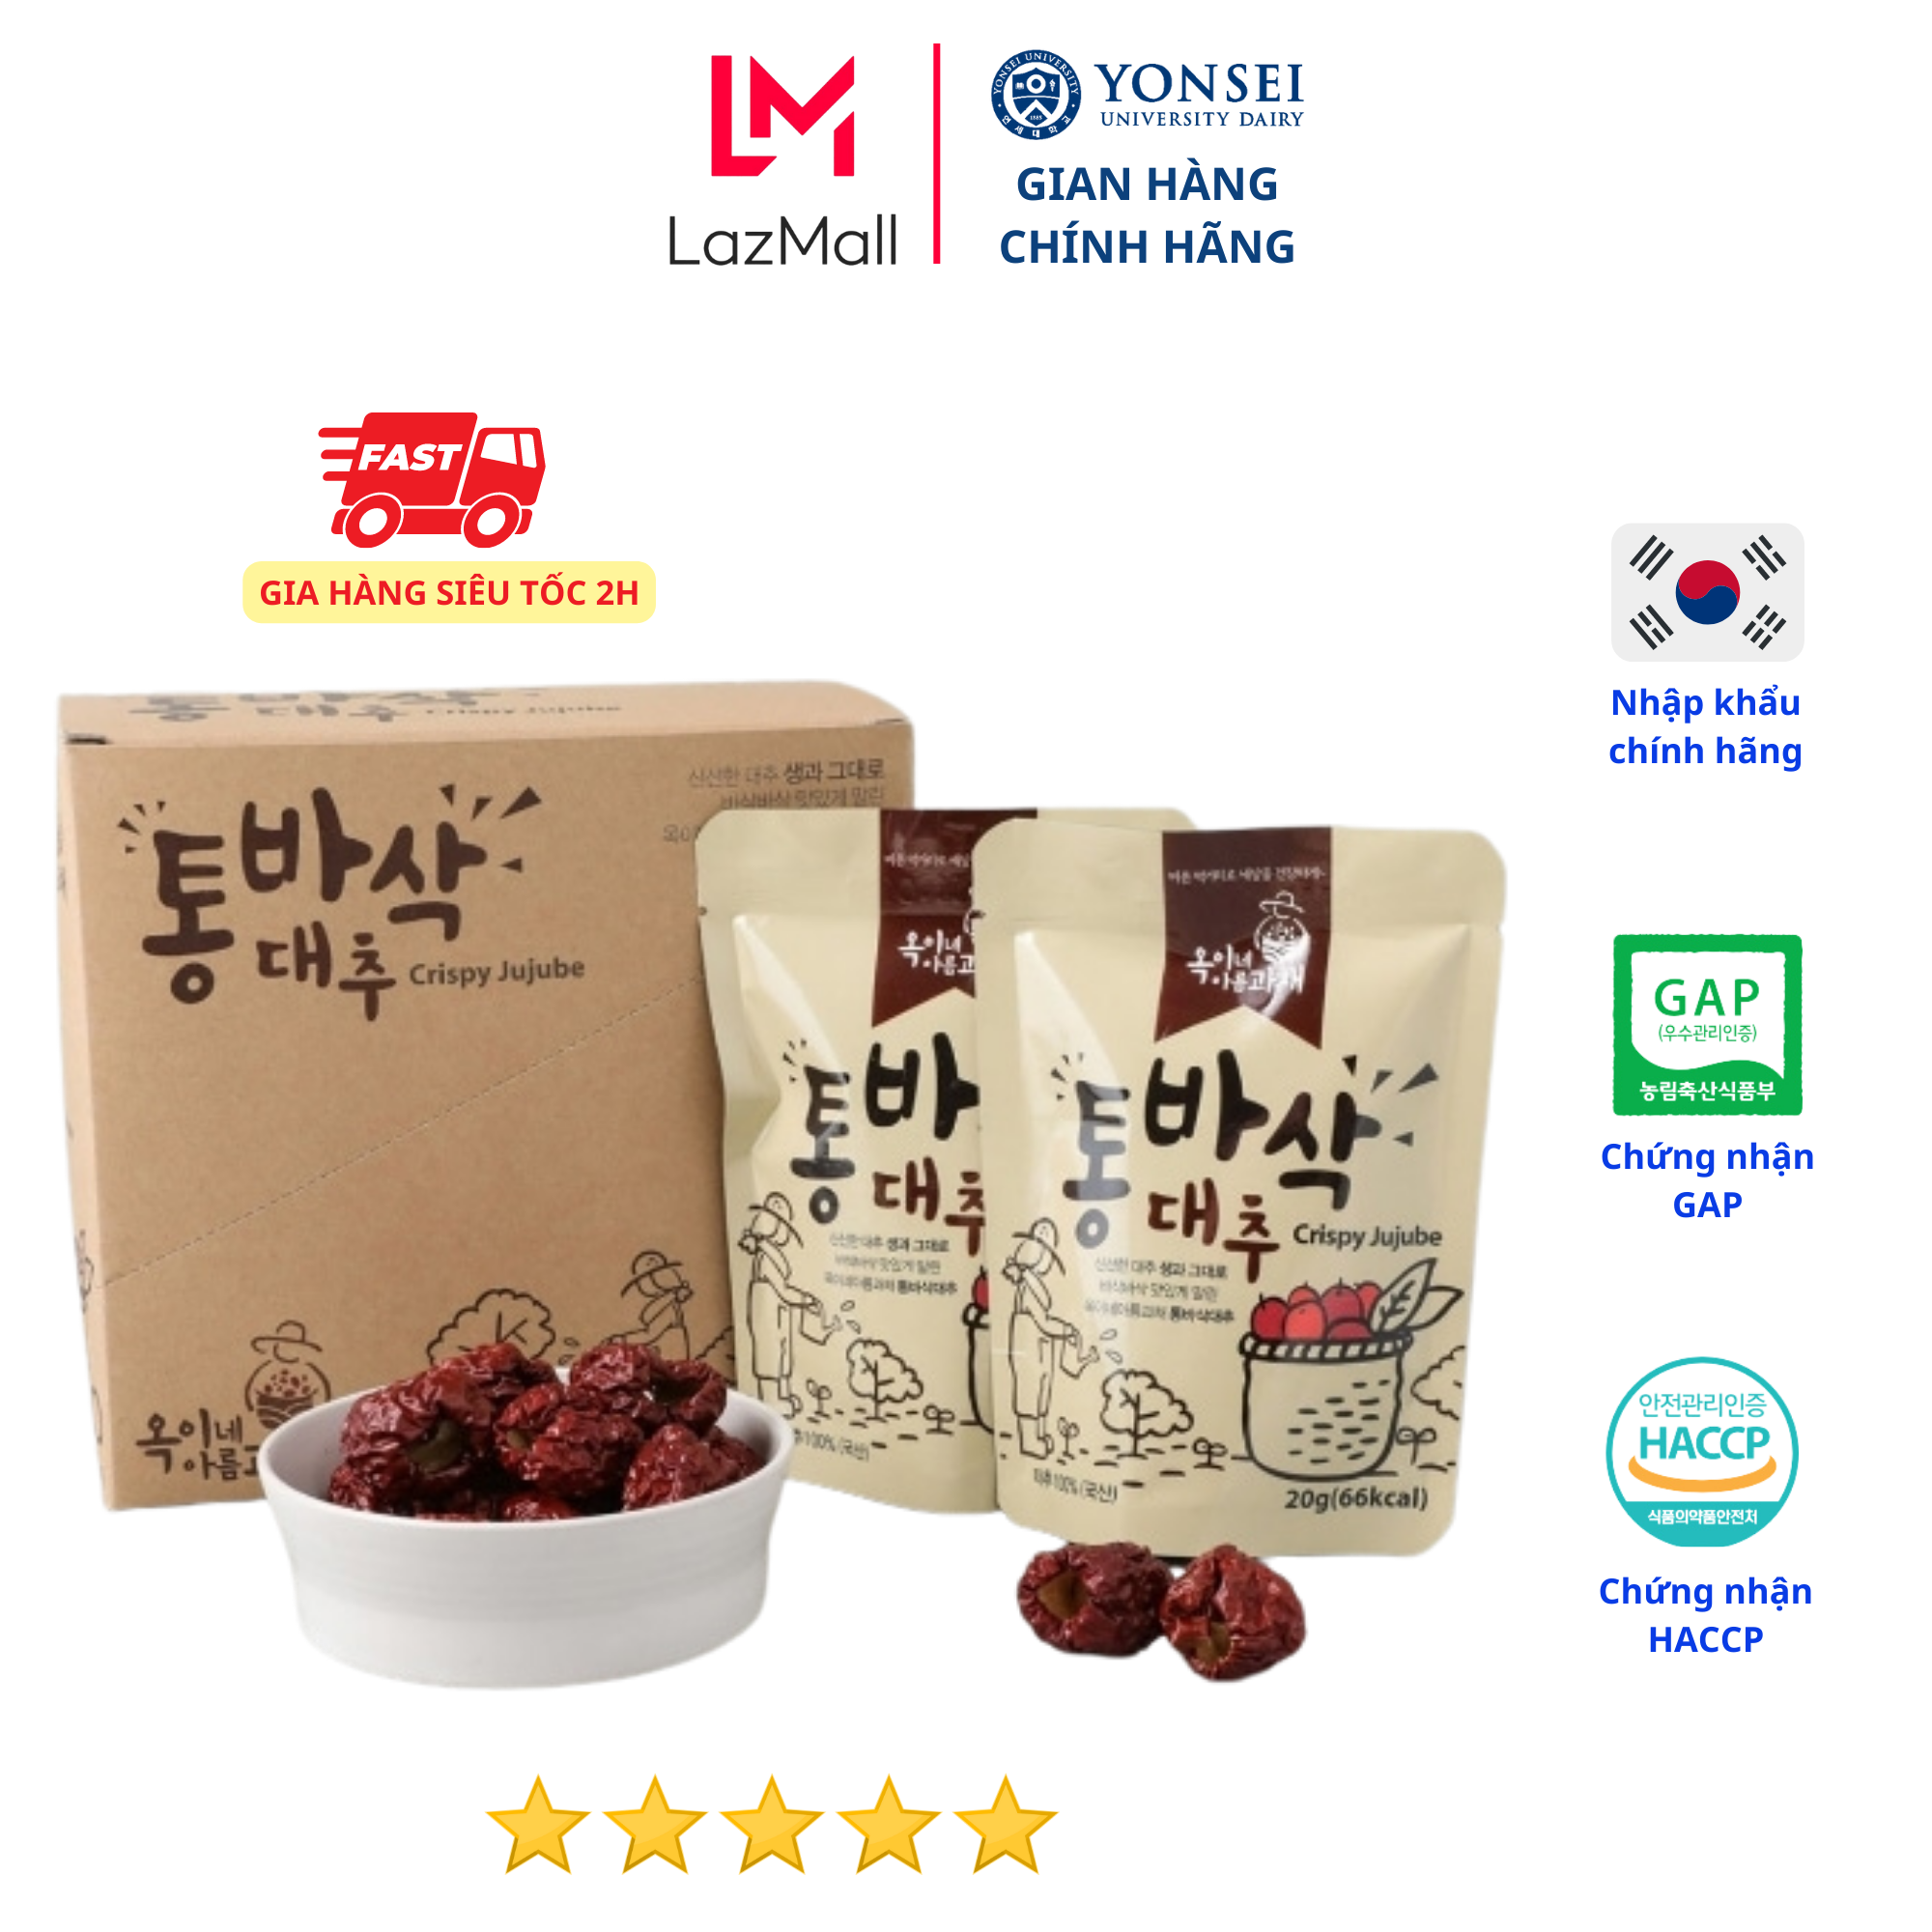 Táo đỏ Hàn Quốc sấy khô loại 1 nhập khẩu 100% là thực phẩm dùng hằng ngày tăng cường sức khỏe bổ sung khí huyết an thần dễ ngủ AN TOÀN, THƠM NGON TỰ NHIÊN, TIỆN SỬ DỤNG thumbnail